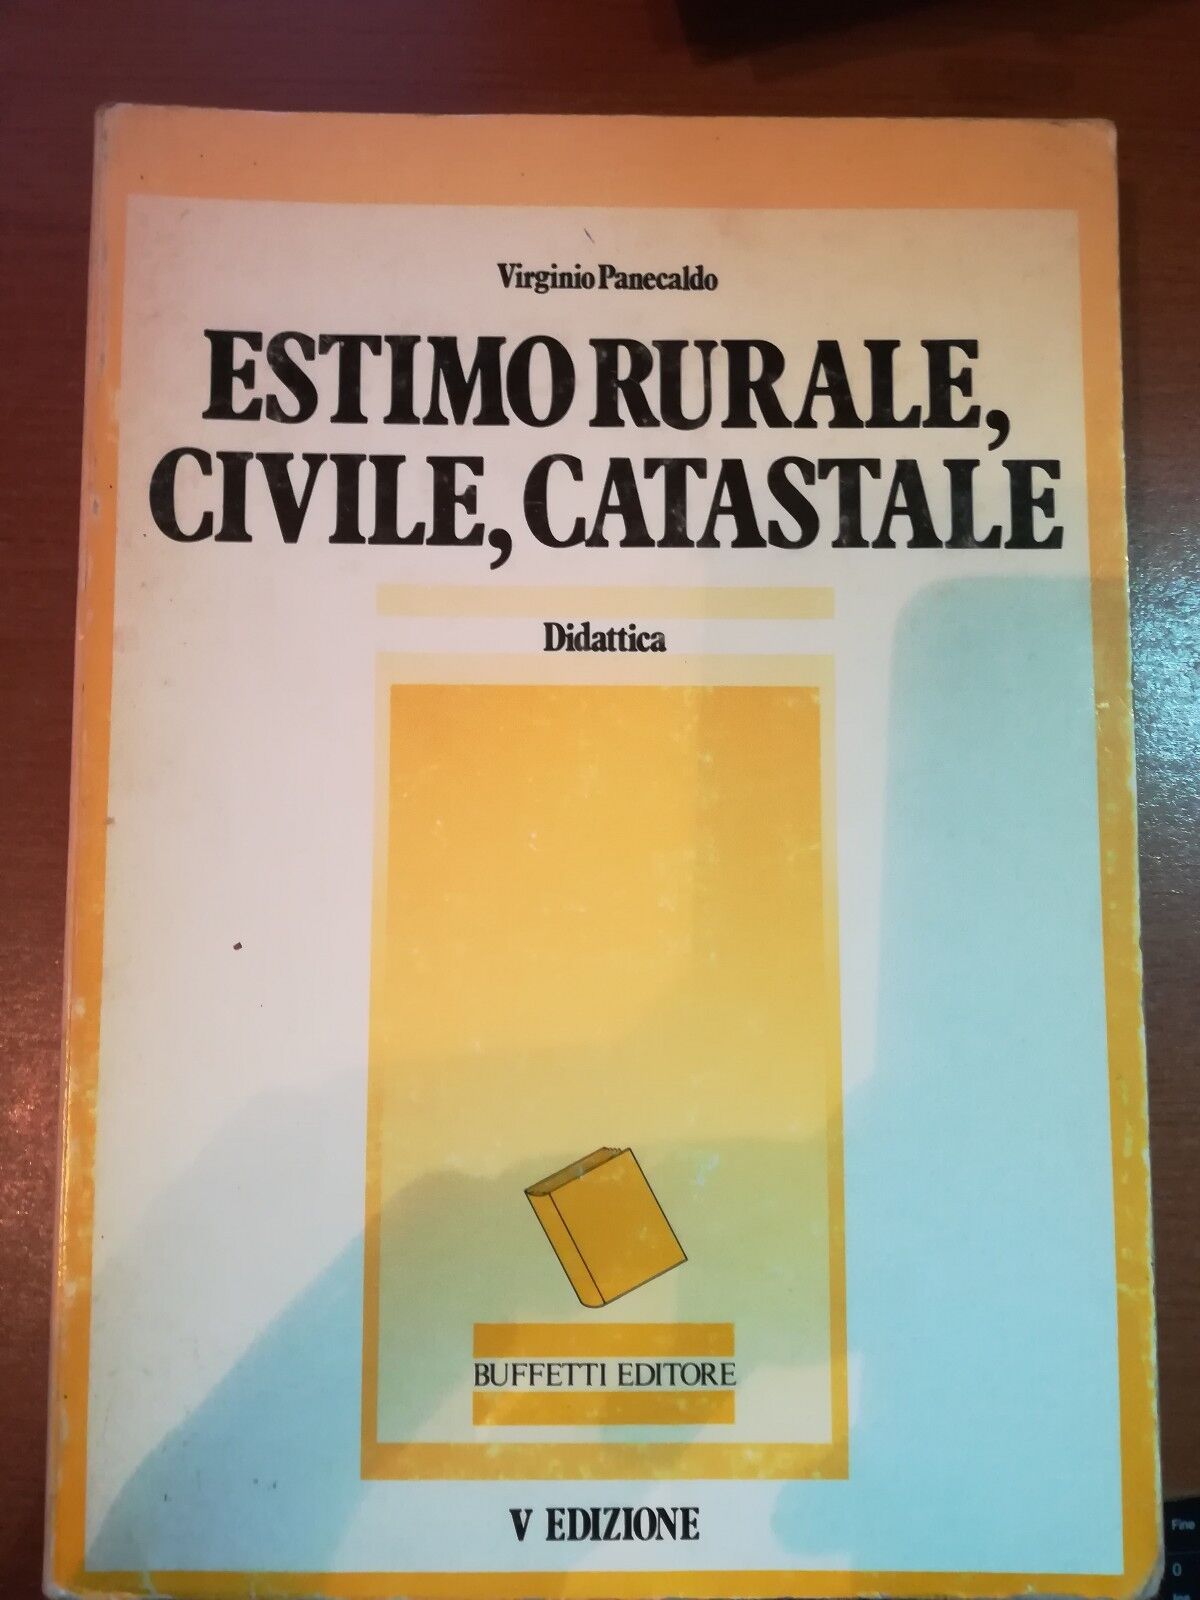 Estimo rurale , civile,catastale - Virginio Panecaldo - Buffetti - 1984 - M